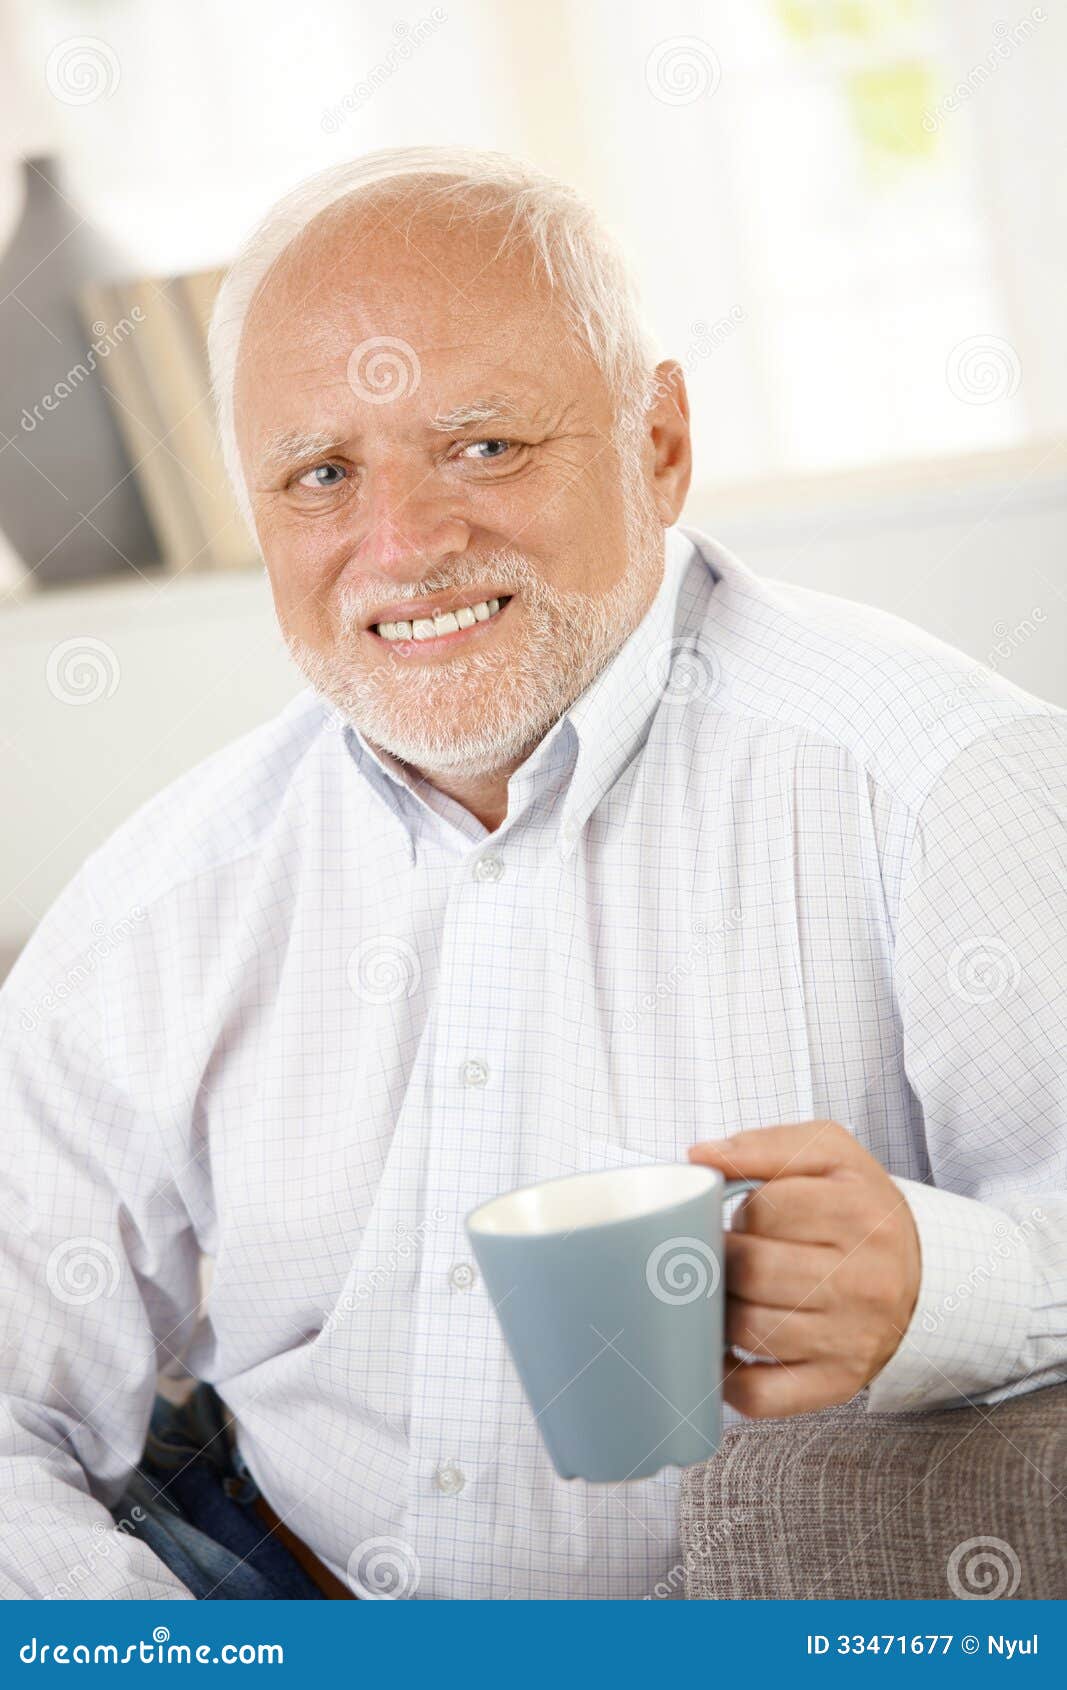 smiling-old-man-having-coffee-portrait-looking-happy-33471677.jpg